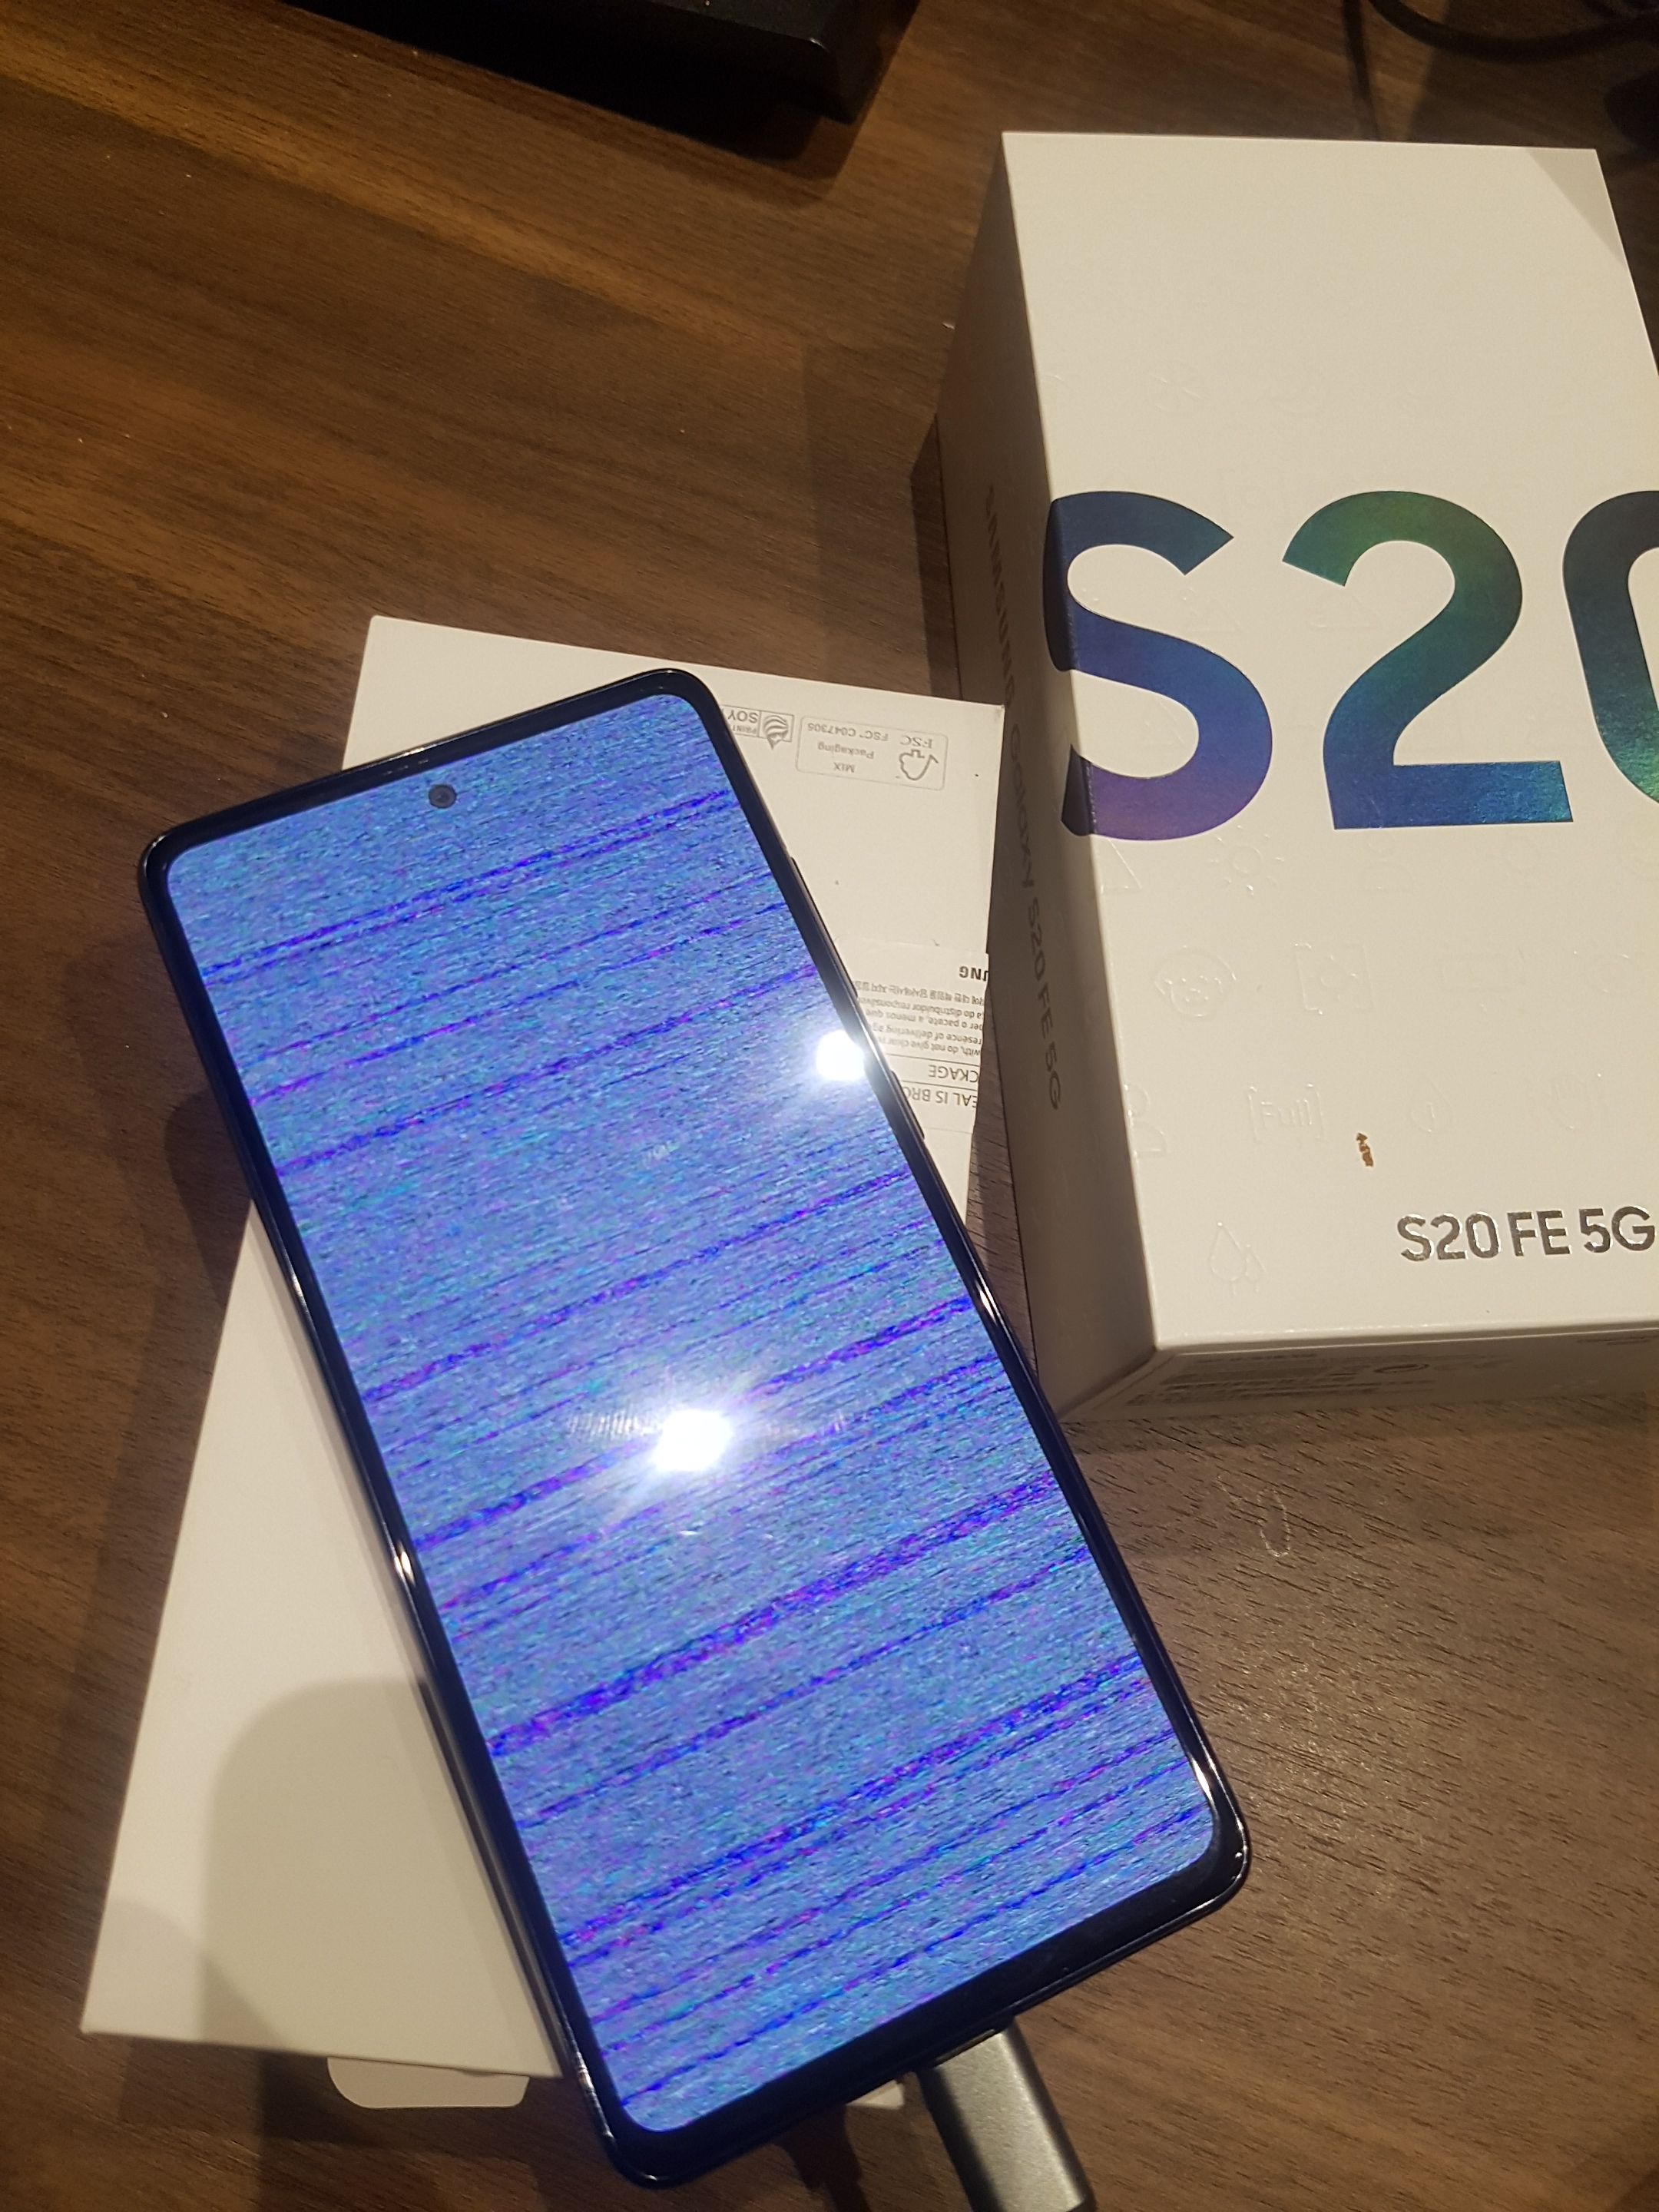 Probleme Ecran effet mozaic violet aleatoire - Samsung Community